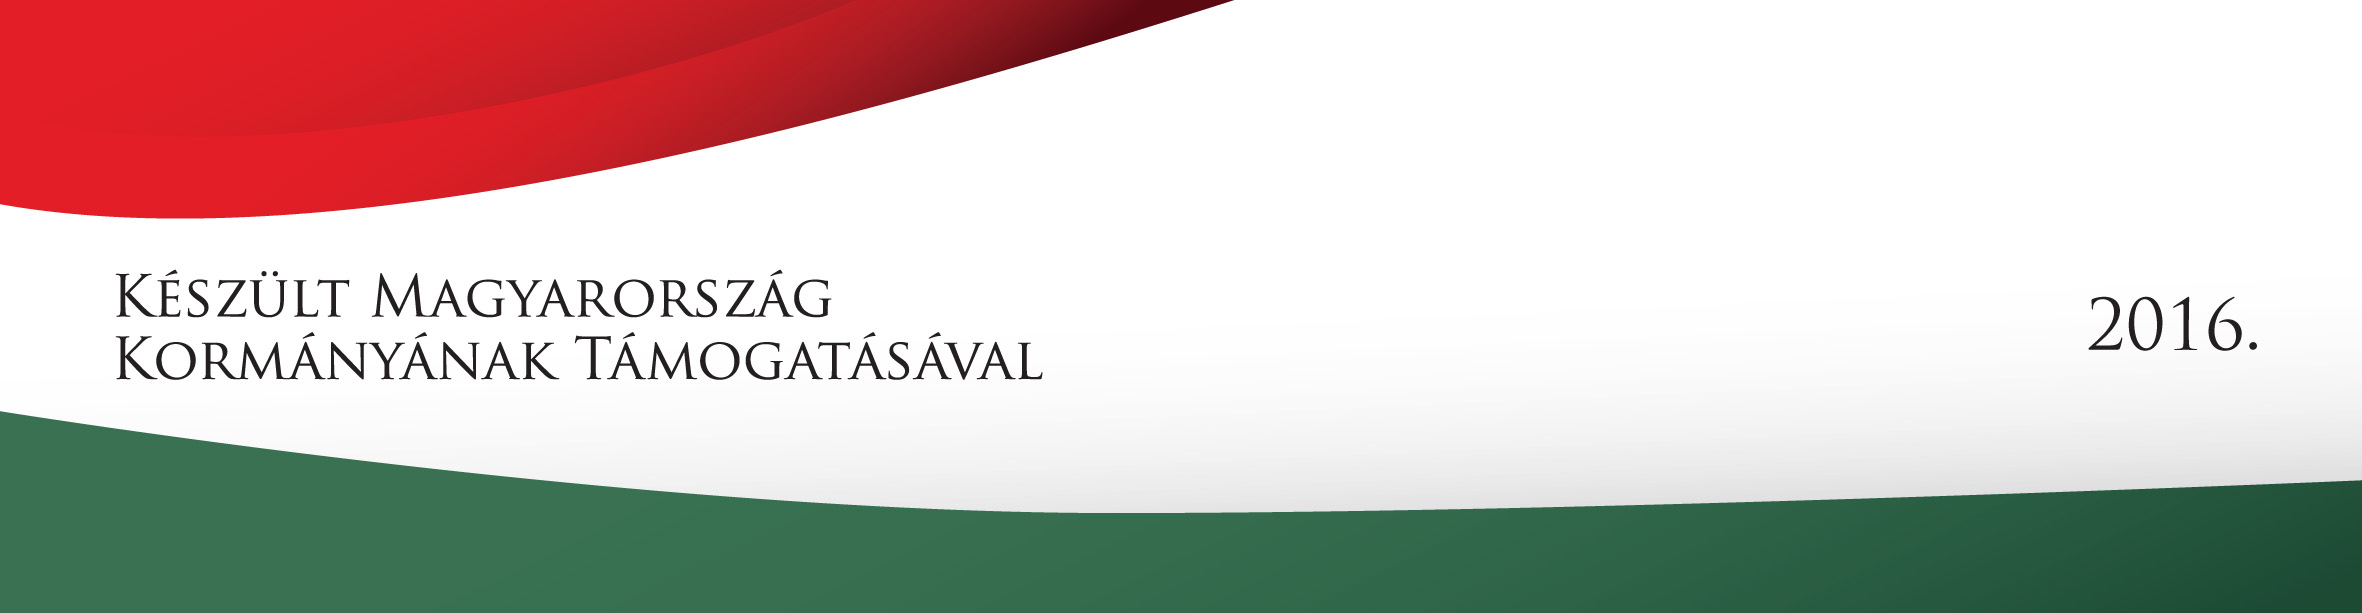 Készült Magyarország Kormányának Támogatásával 2016 logó